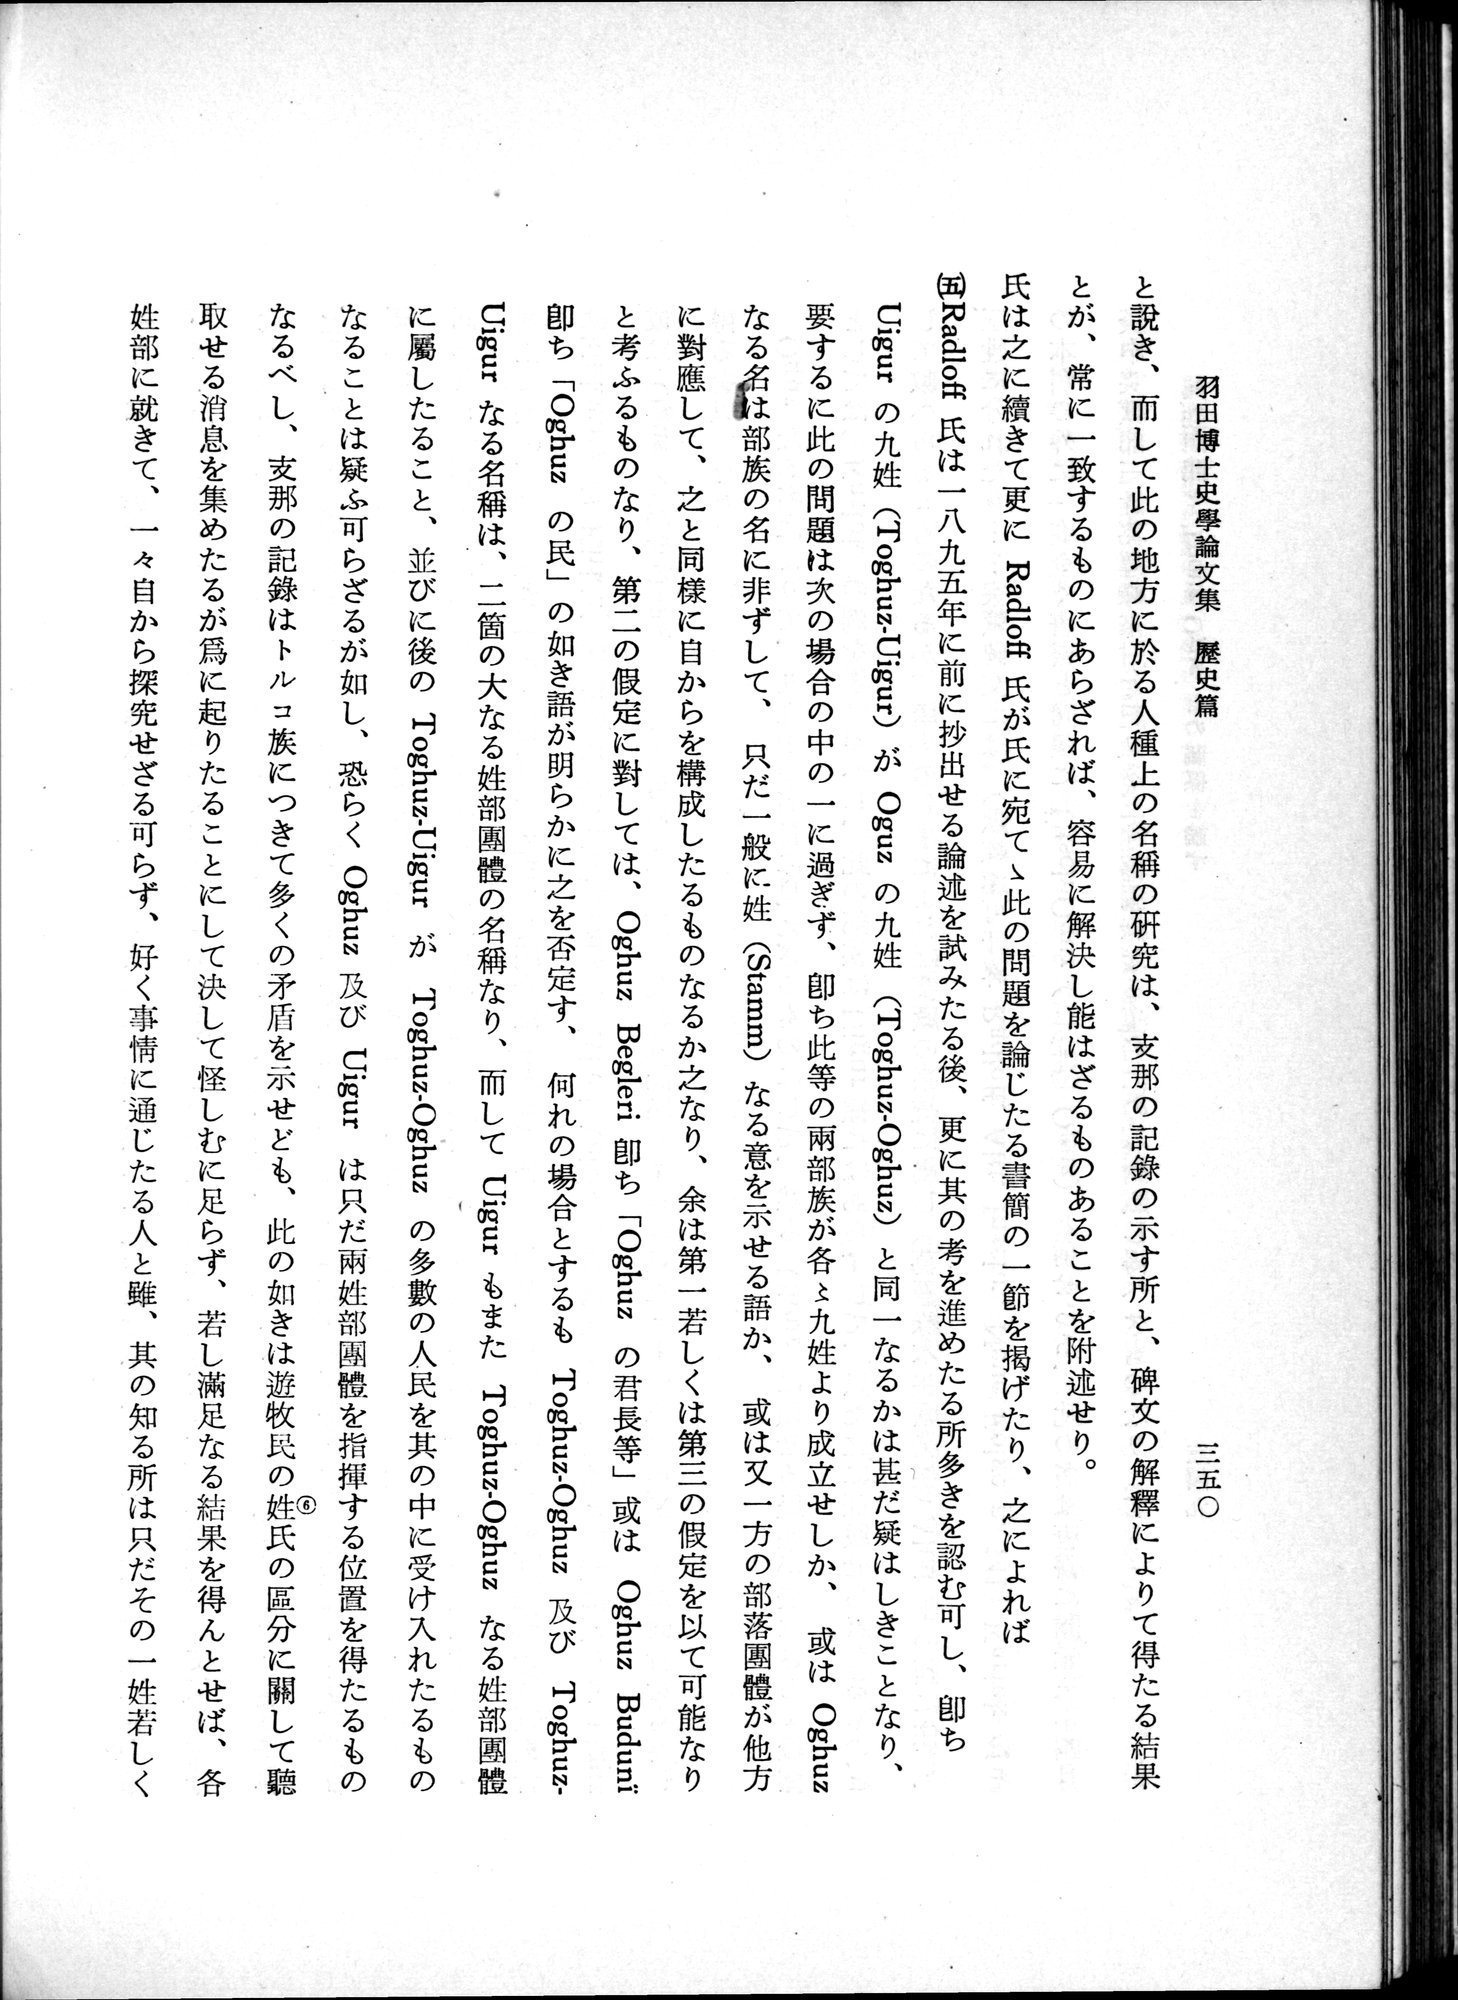 羽田博士史学論文集 : vol.1 / Page 388 (Grayscale High Resolution Image)